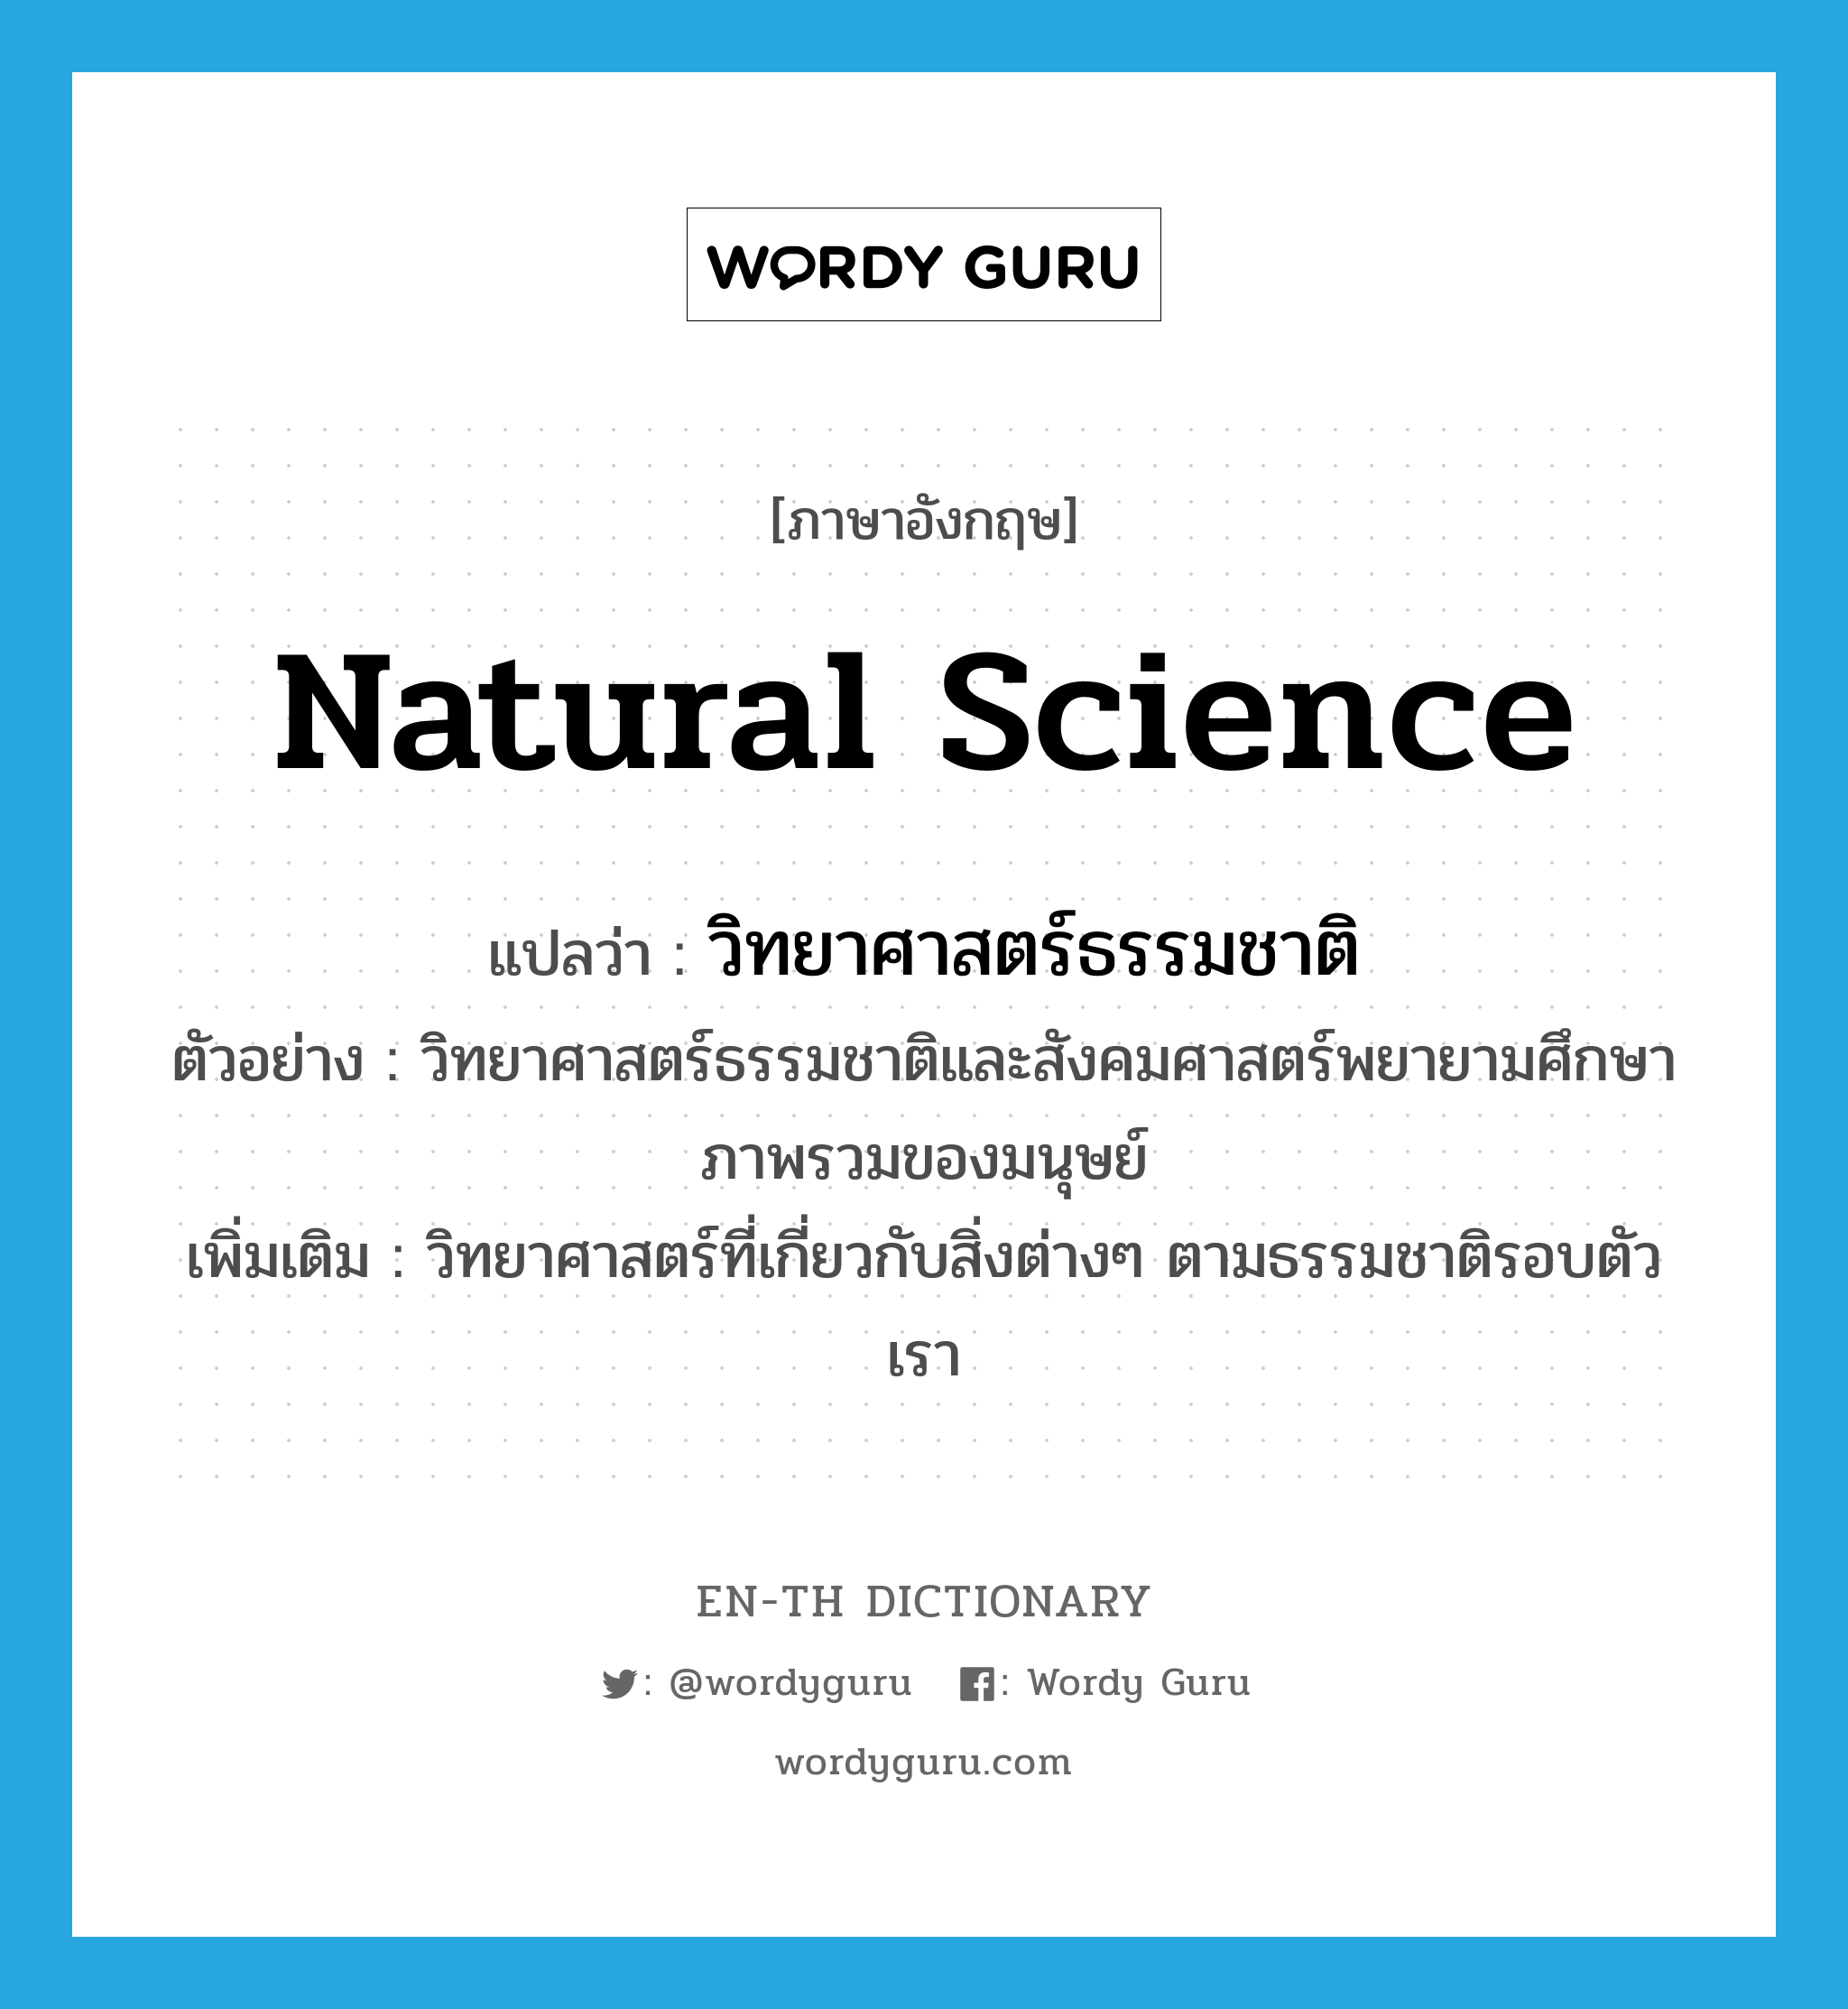 natural science แปลว่า?, คำศัพท์ภาษาอังกฤษ natural science แปลว่า วิทยาศาสตร์ธรรมชาติ ประเภท N ตัวอย่าง วิทยาศาสตร์ธรรมชาติและสังคมศาสตร์พยายามศึกษาภาพรวมของมนุษย์ เพิ่มเติม วิทยาศาสตร์ที่เกี่ยวกับสิ่งต่างๆ ตามธรรมชาติรอบตัวเรา หมวด N